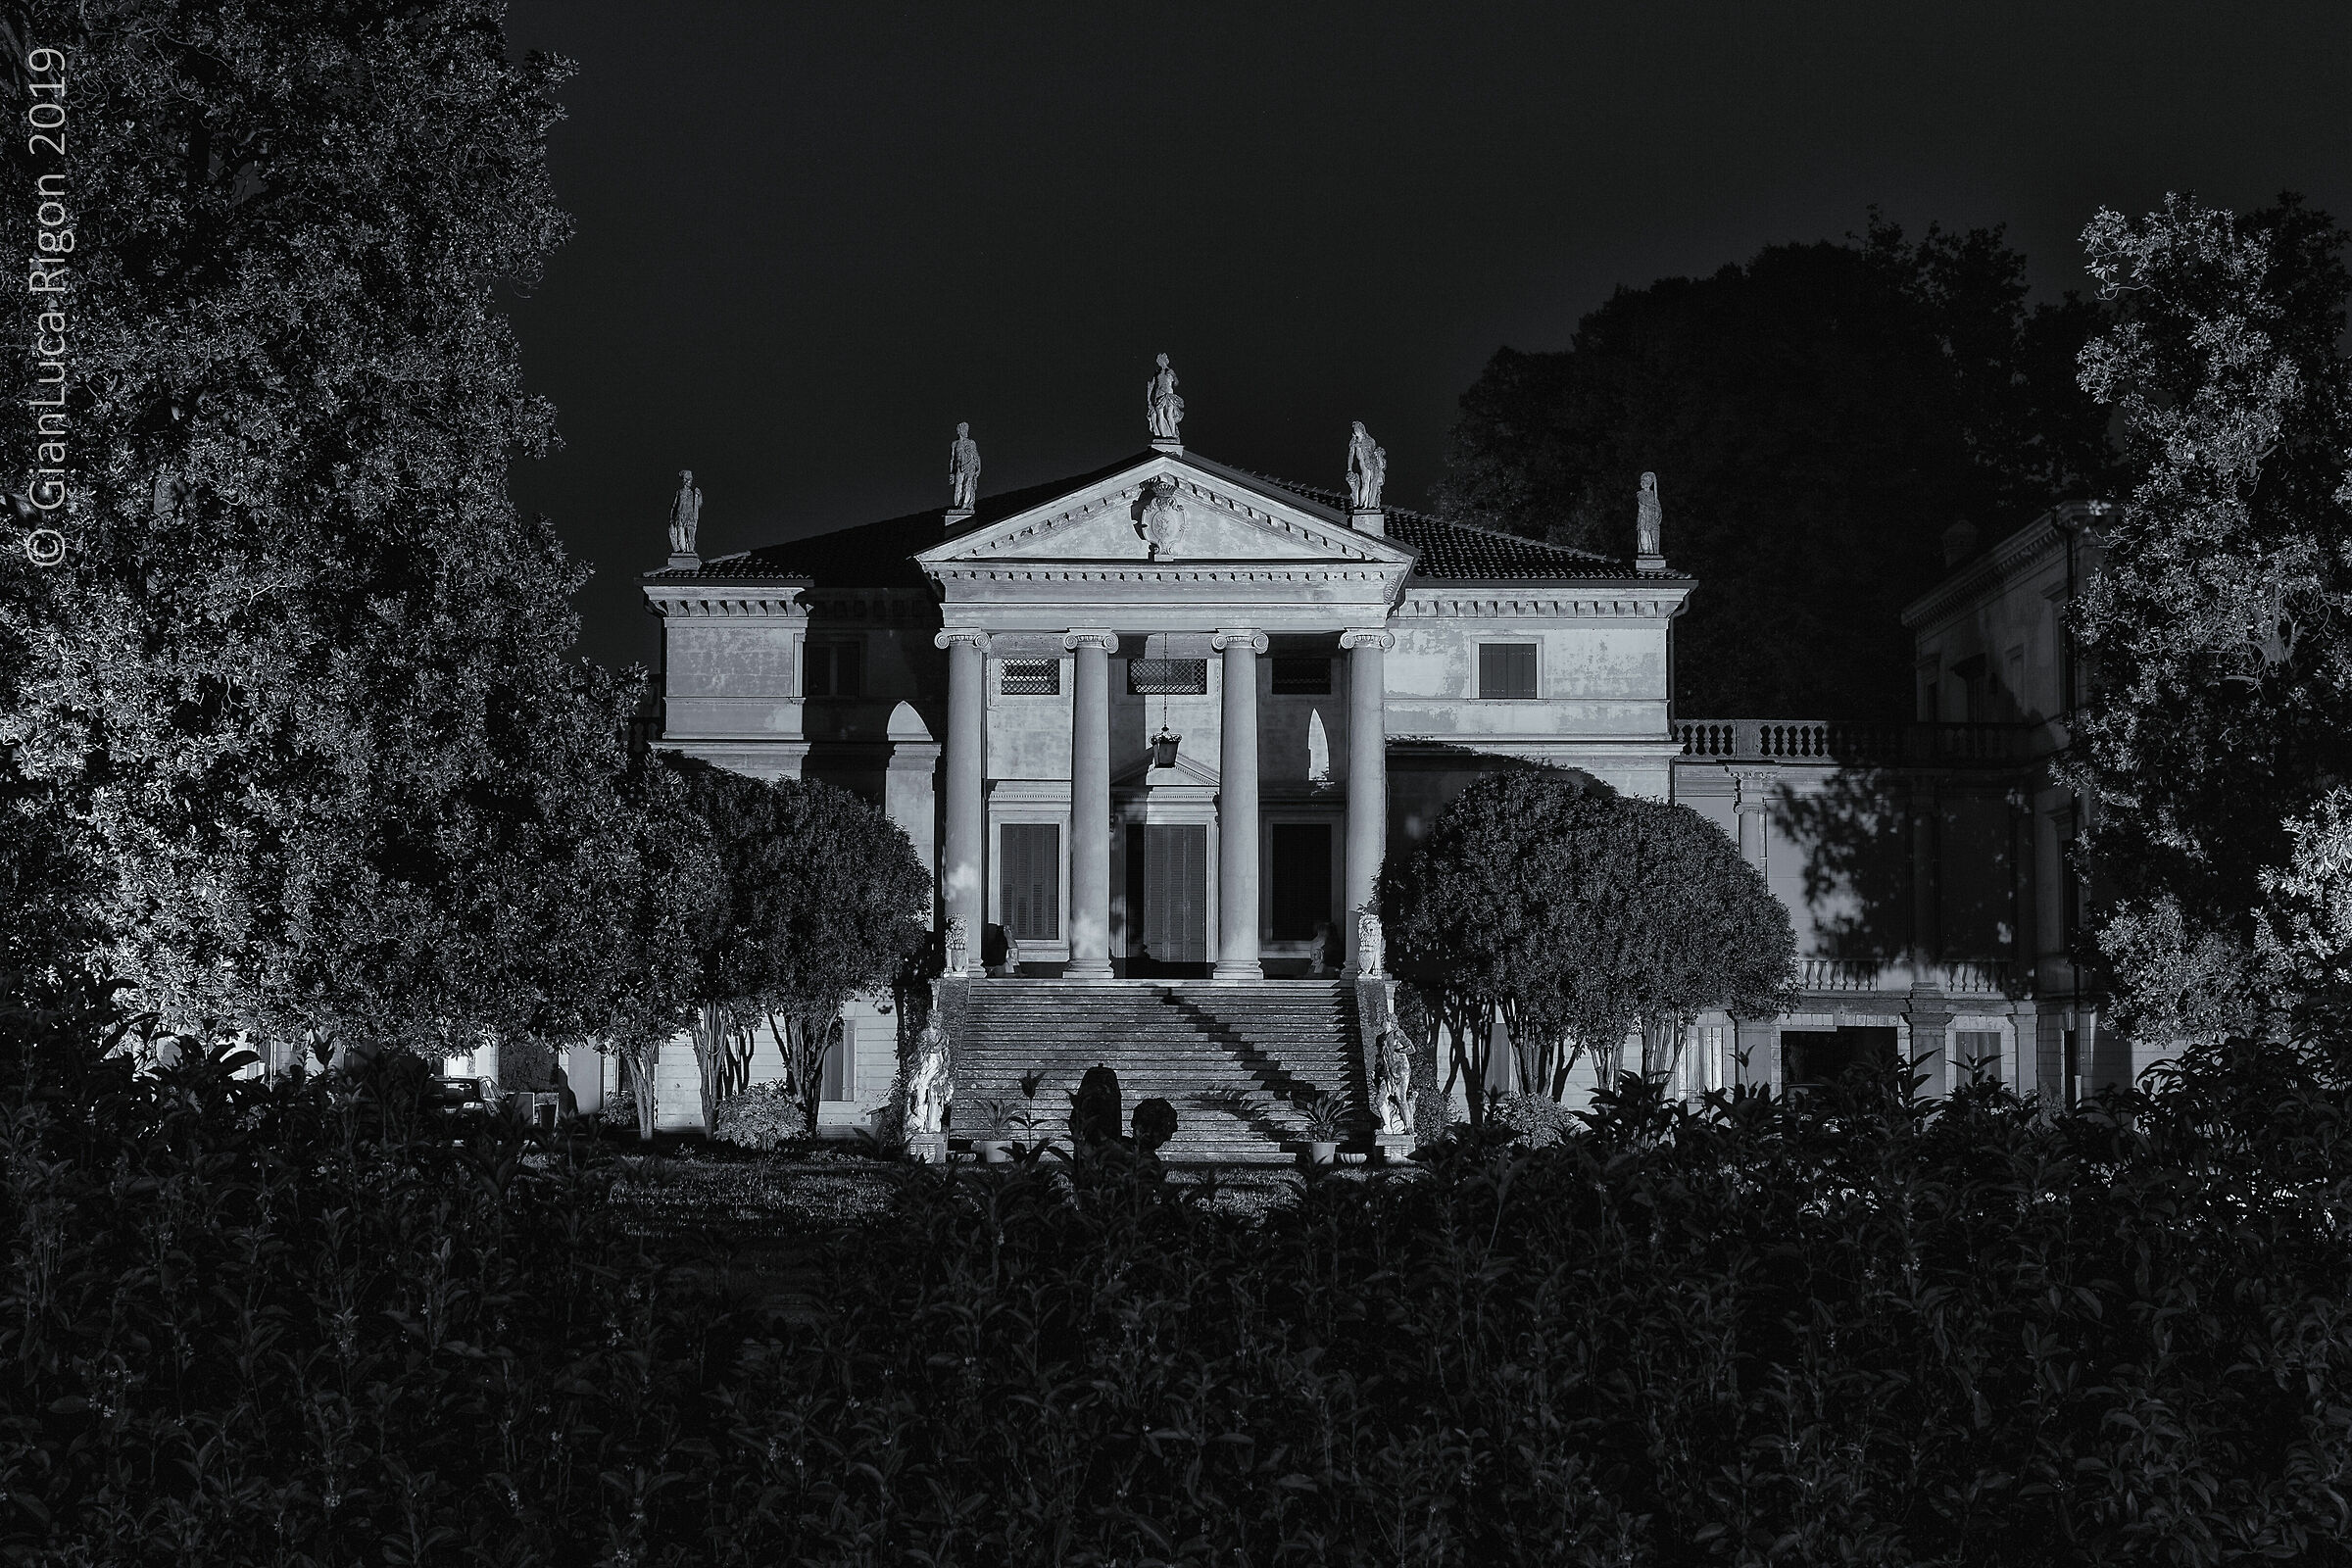 Villa Da Porto - Pedrotti in B&N...